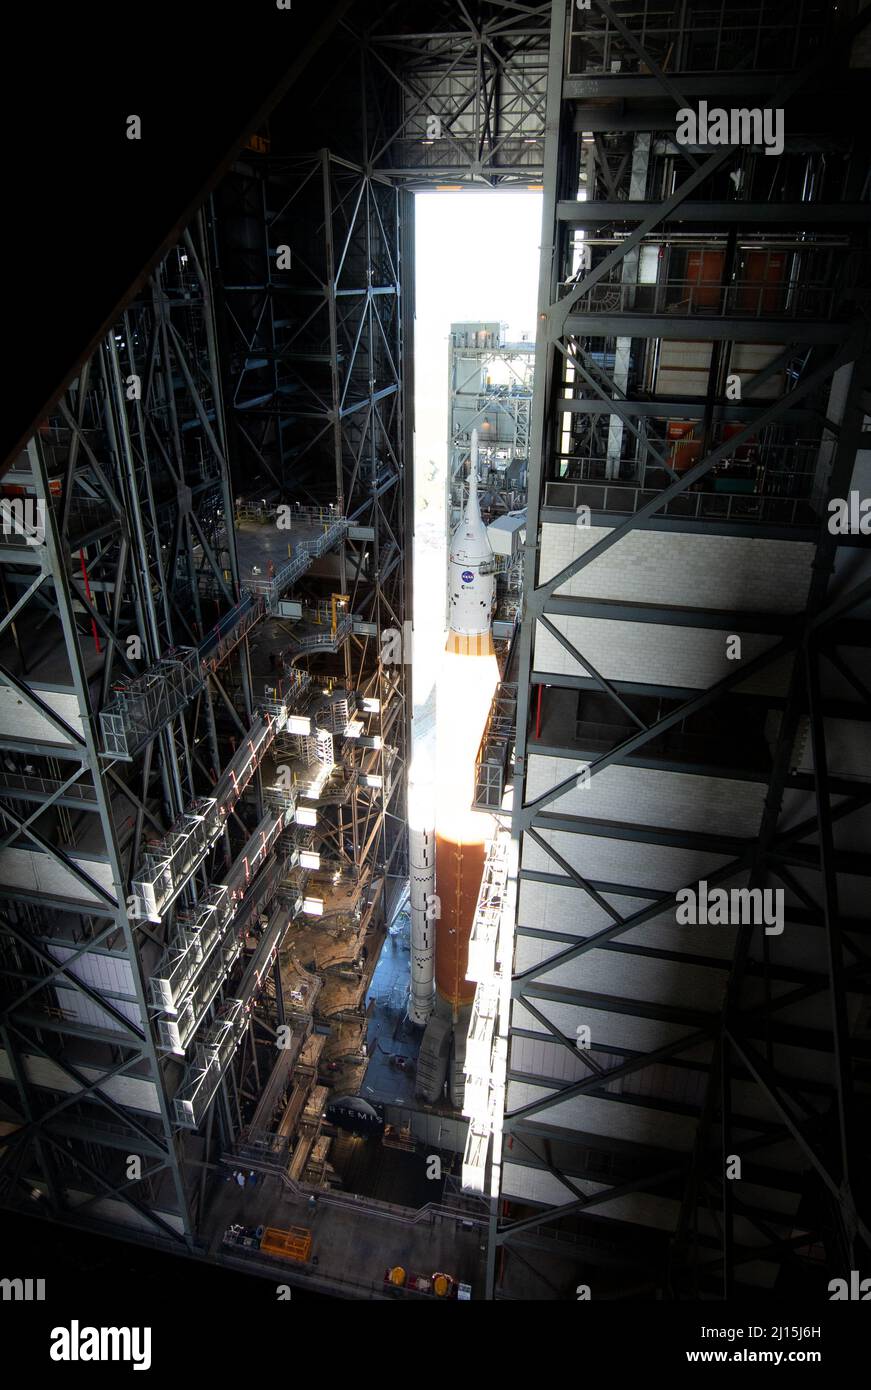 La fusée SLS (Space Launch System) de la NASA à bord de l'engin spatial Orion est vue au sommet d'un lanceur mobile alors qu'elle sort de High Bay 3 du bâtiment d'assemblage de véhicules pour la première fois pour lancer le complexe 39B, le jeudi 17 mars 2022, au Kennedy Space Center de la NASA en Floride. Avant l'essai en vol Artemis I de la NASA, la fusée SLS et l'engin spatial Orion entièrement empilés et intégrés feront l'objet d'une répétition en robe humide au Launch Complex 39B pour vérifier les systèmes et pratiquer les procédures de compte à rebours pour le premier lancement. Crédit photo : (NASA/Joel Kowsky & Aubrey Gemignani ) Banque D'Images